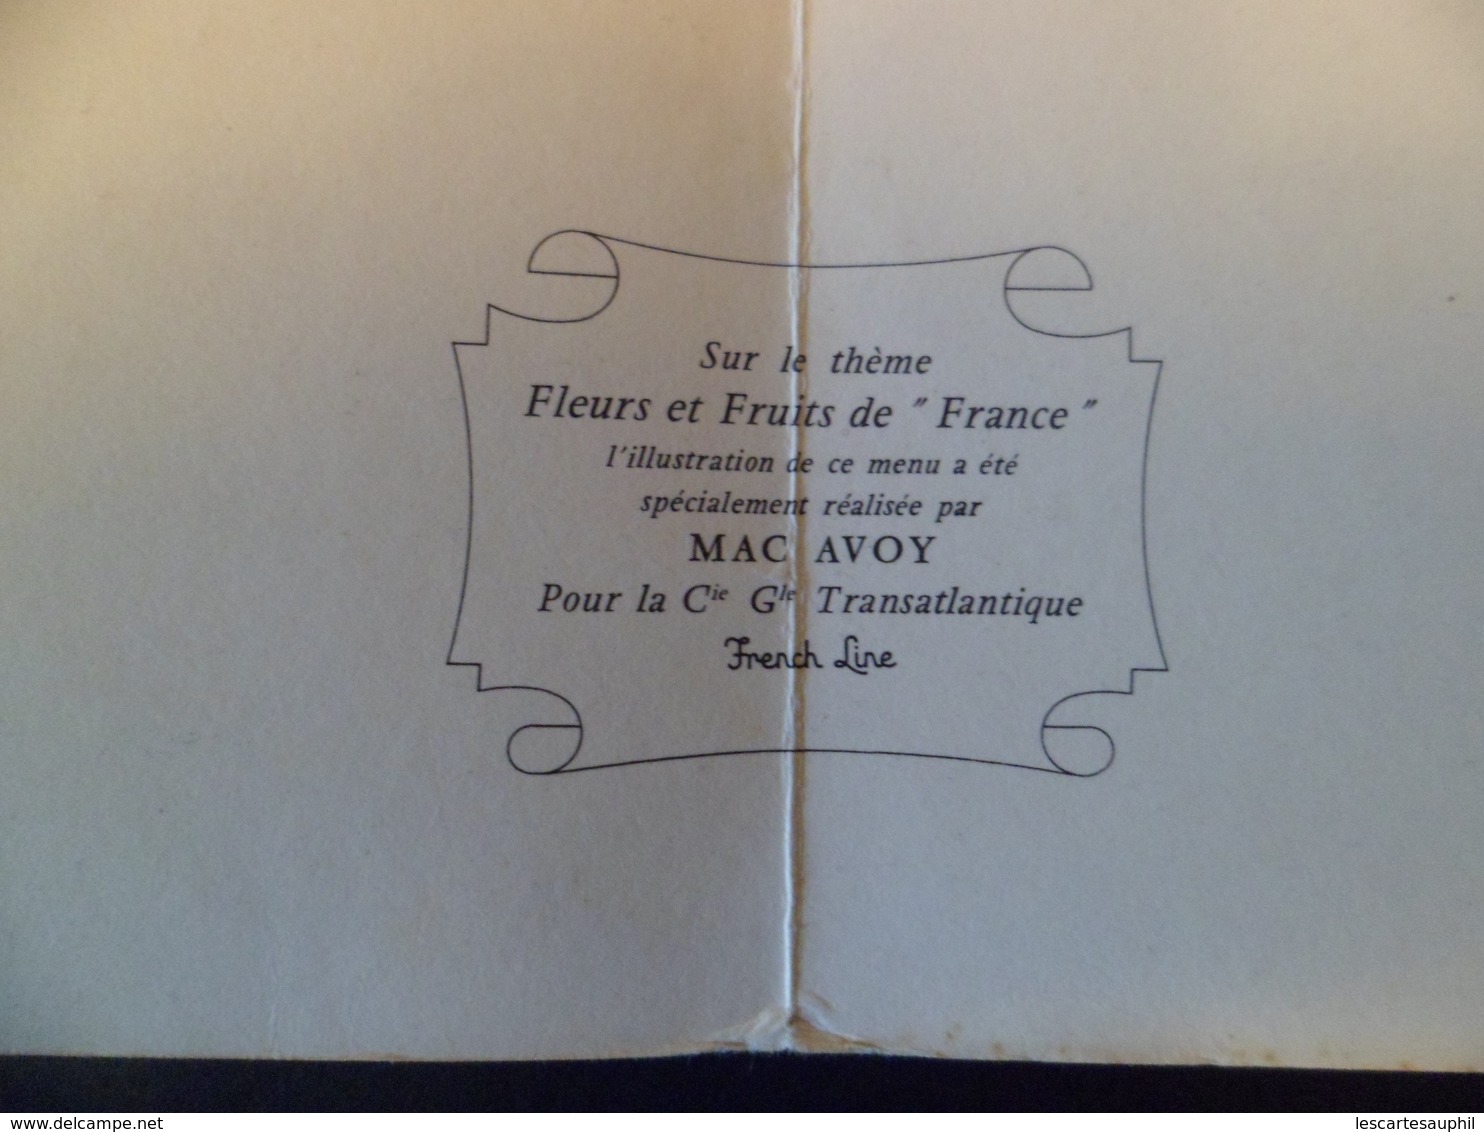 Ancien Menu Paquebot France Illustré Mac AVOY Cie Gle Transatlantique French Line Premiere Classe R Grangier 1963 - Menu